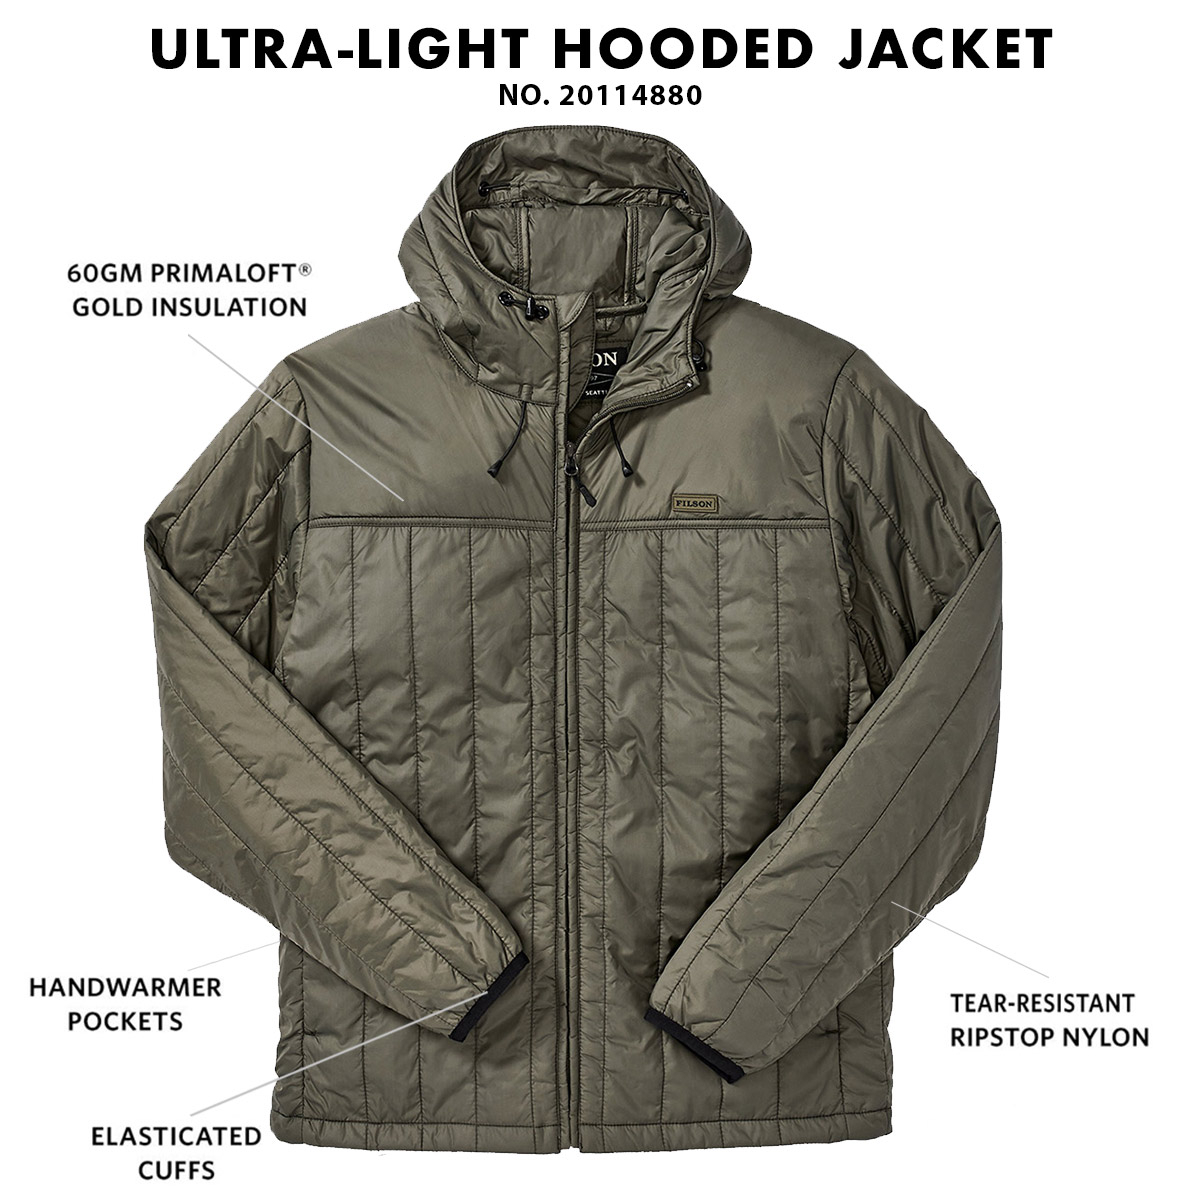 Filson Ultralight Hooded Jacket Olive Gray, Winddicht, warm, atmungsaktiv und komprimierbar auch wenn es nass ist